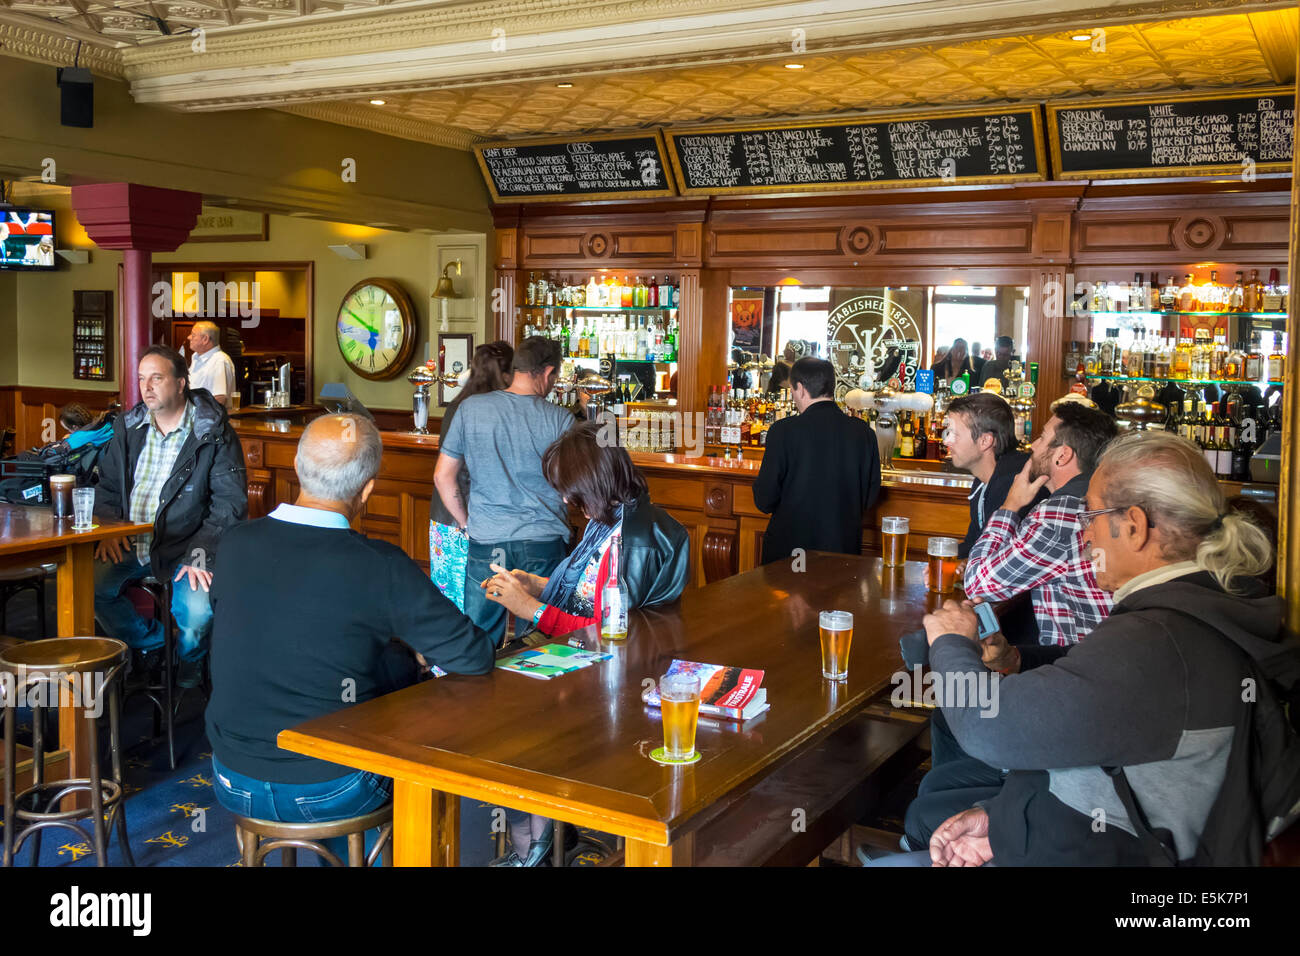 Melbourne Australie, Flinders Street, Young & Jackson Bar & Brasserie, Chloe's Rooms, pub, intérieur, homme homme homme homme, femme femme femme, boisson dri Banque D'Images